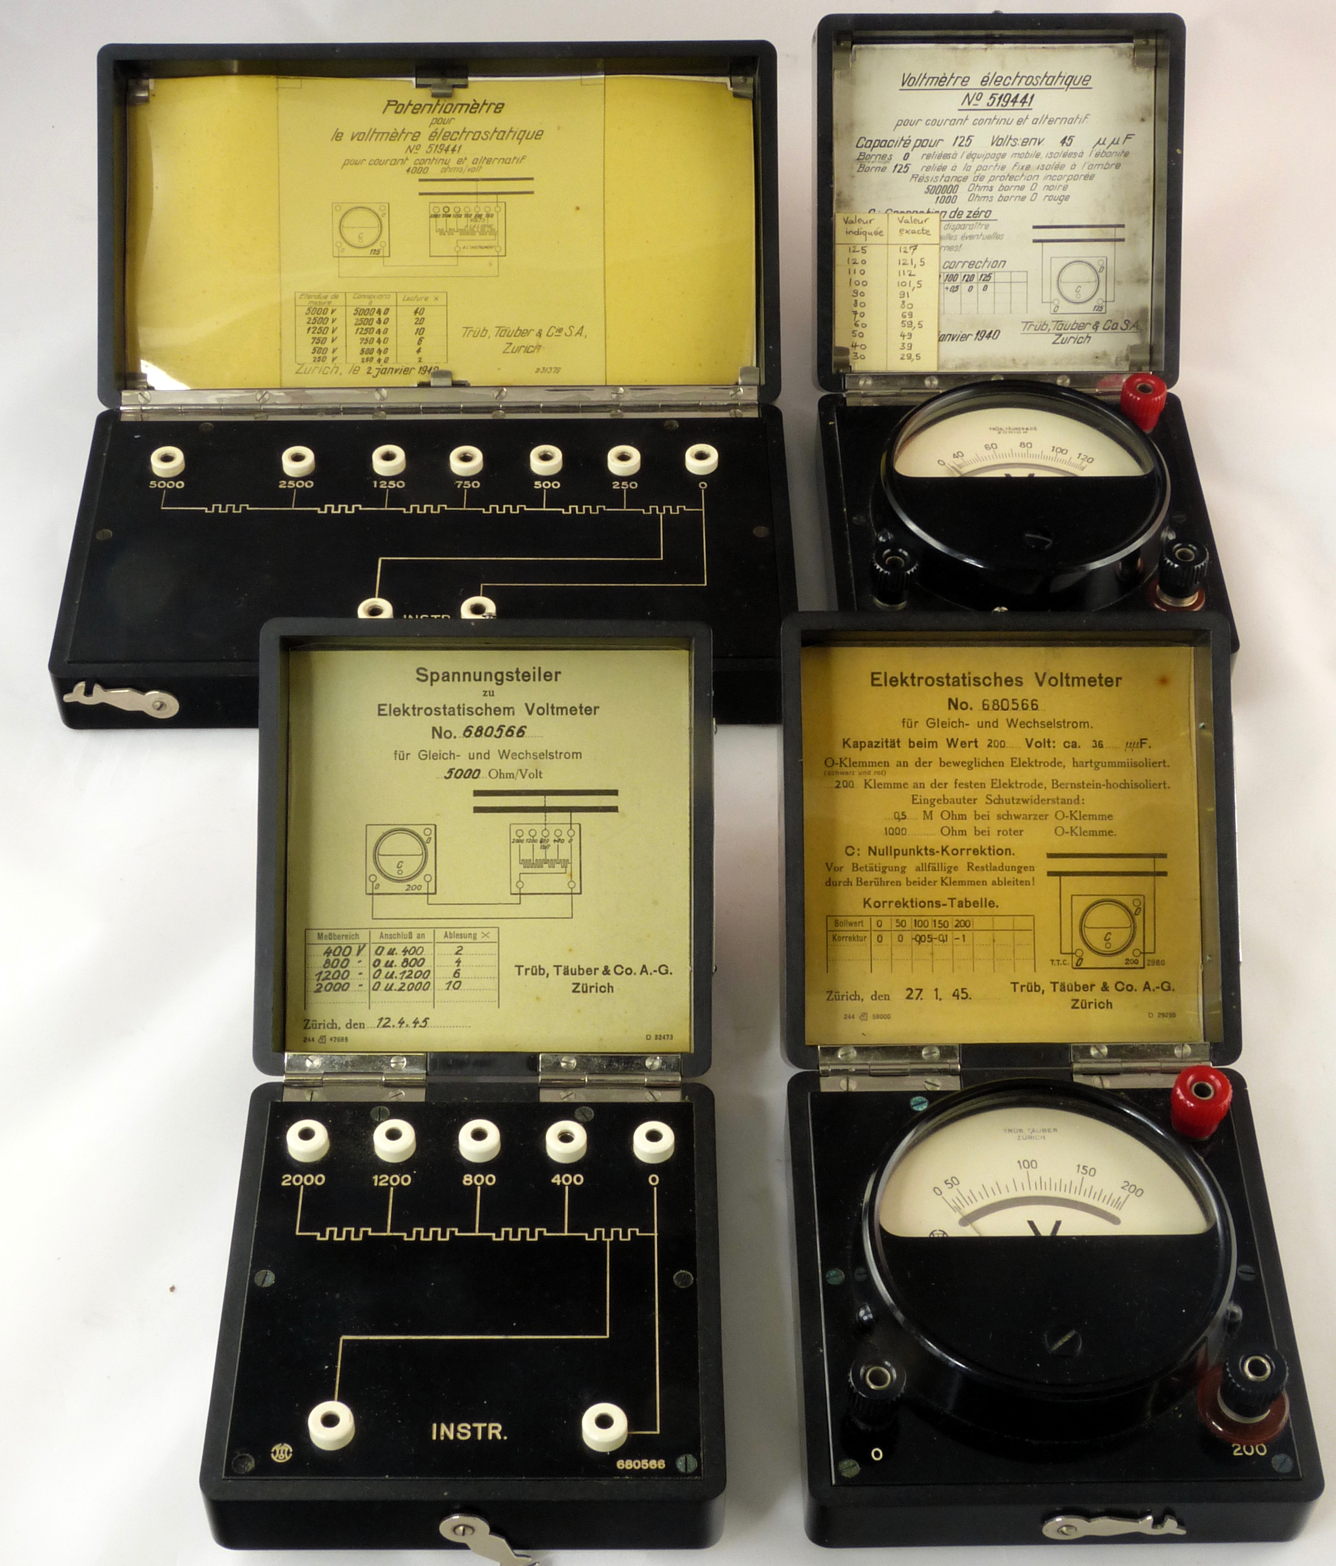 Voltmètres électrostatiques & diviseurs résistifs
(125 V et 200 V)